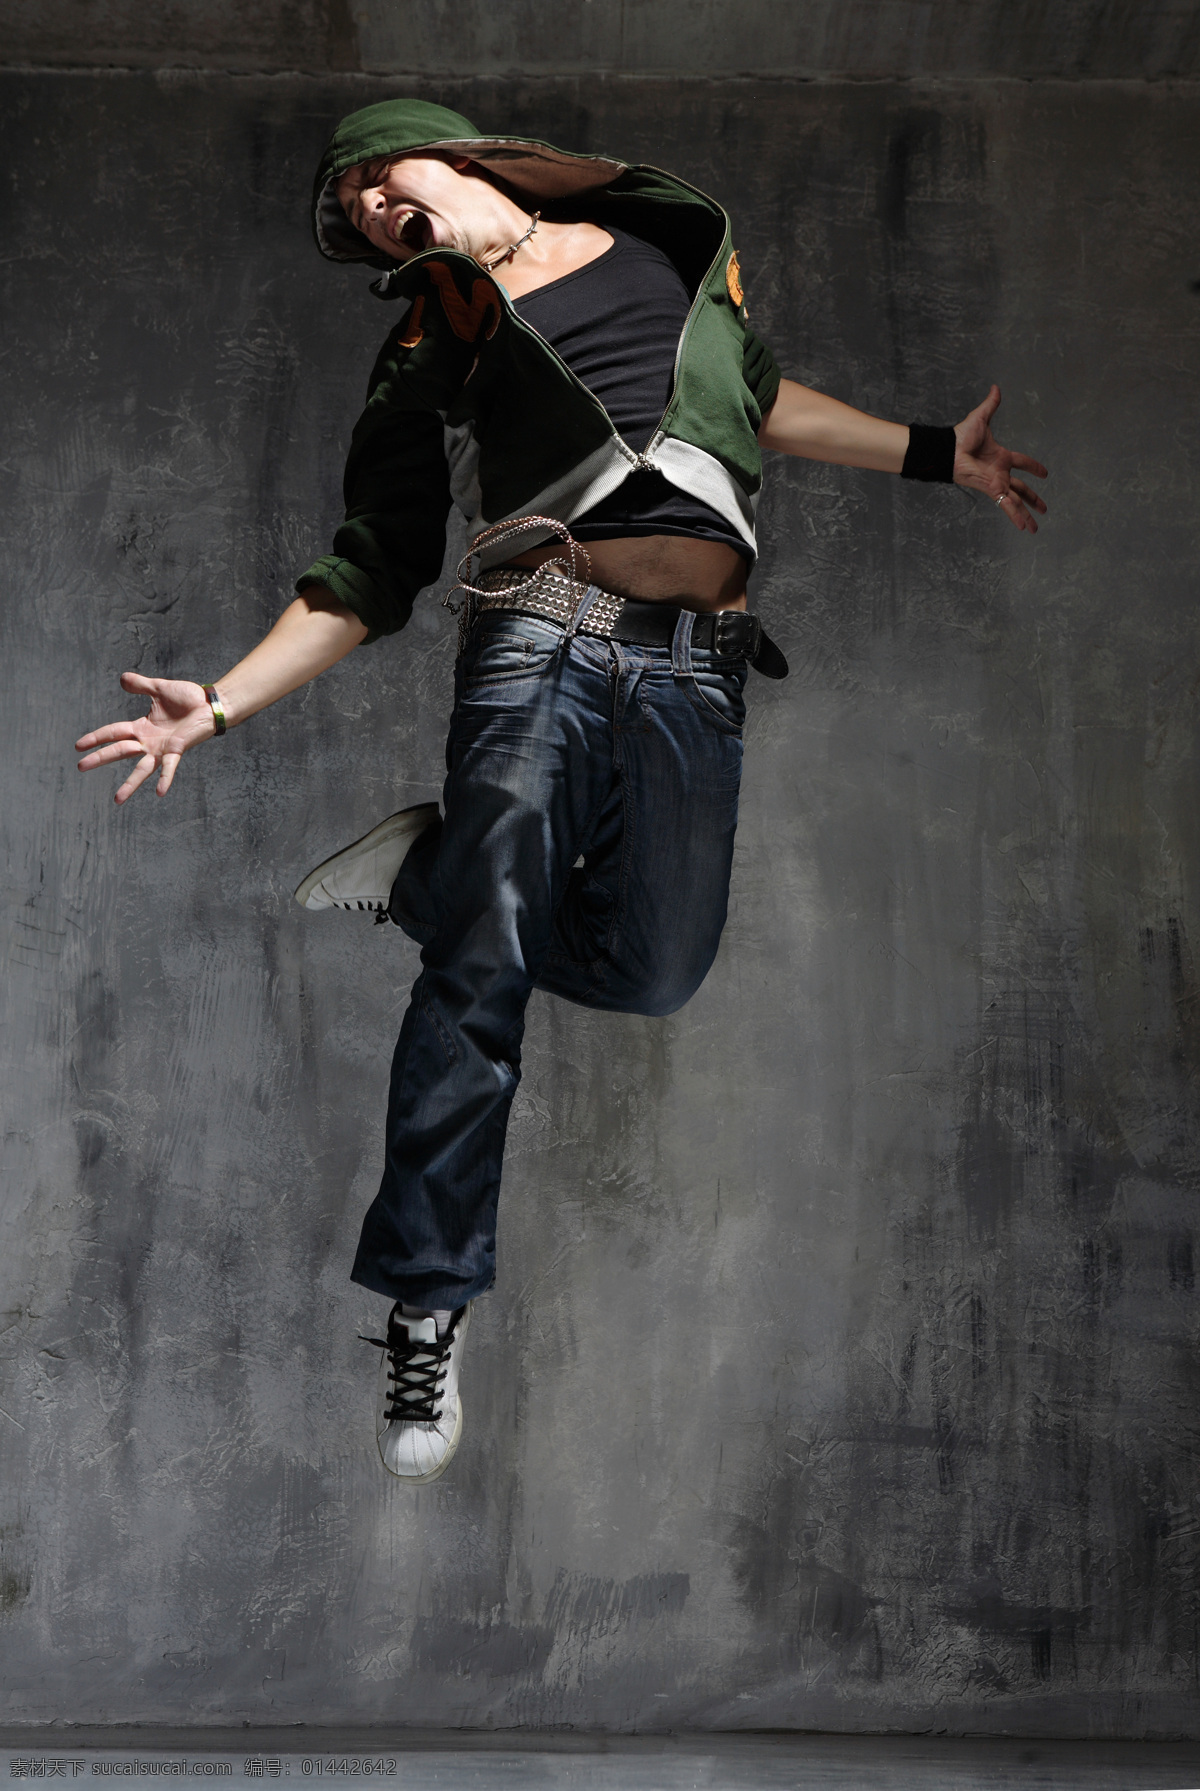 跳 街舞 男人 人物 跳舞 活力 运动 跳跃 嘻哈 大叫 张开双臂 跳起 生活人物 人物图片